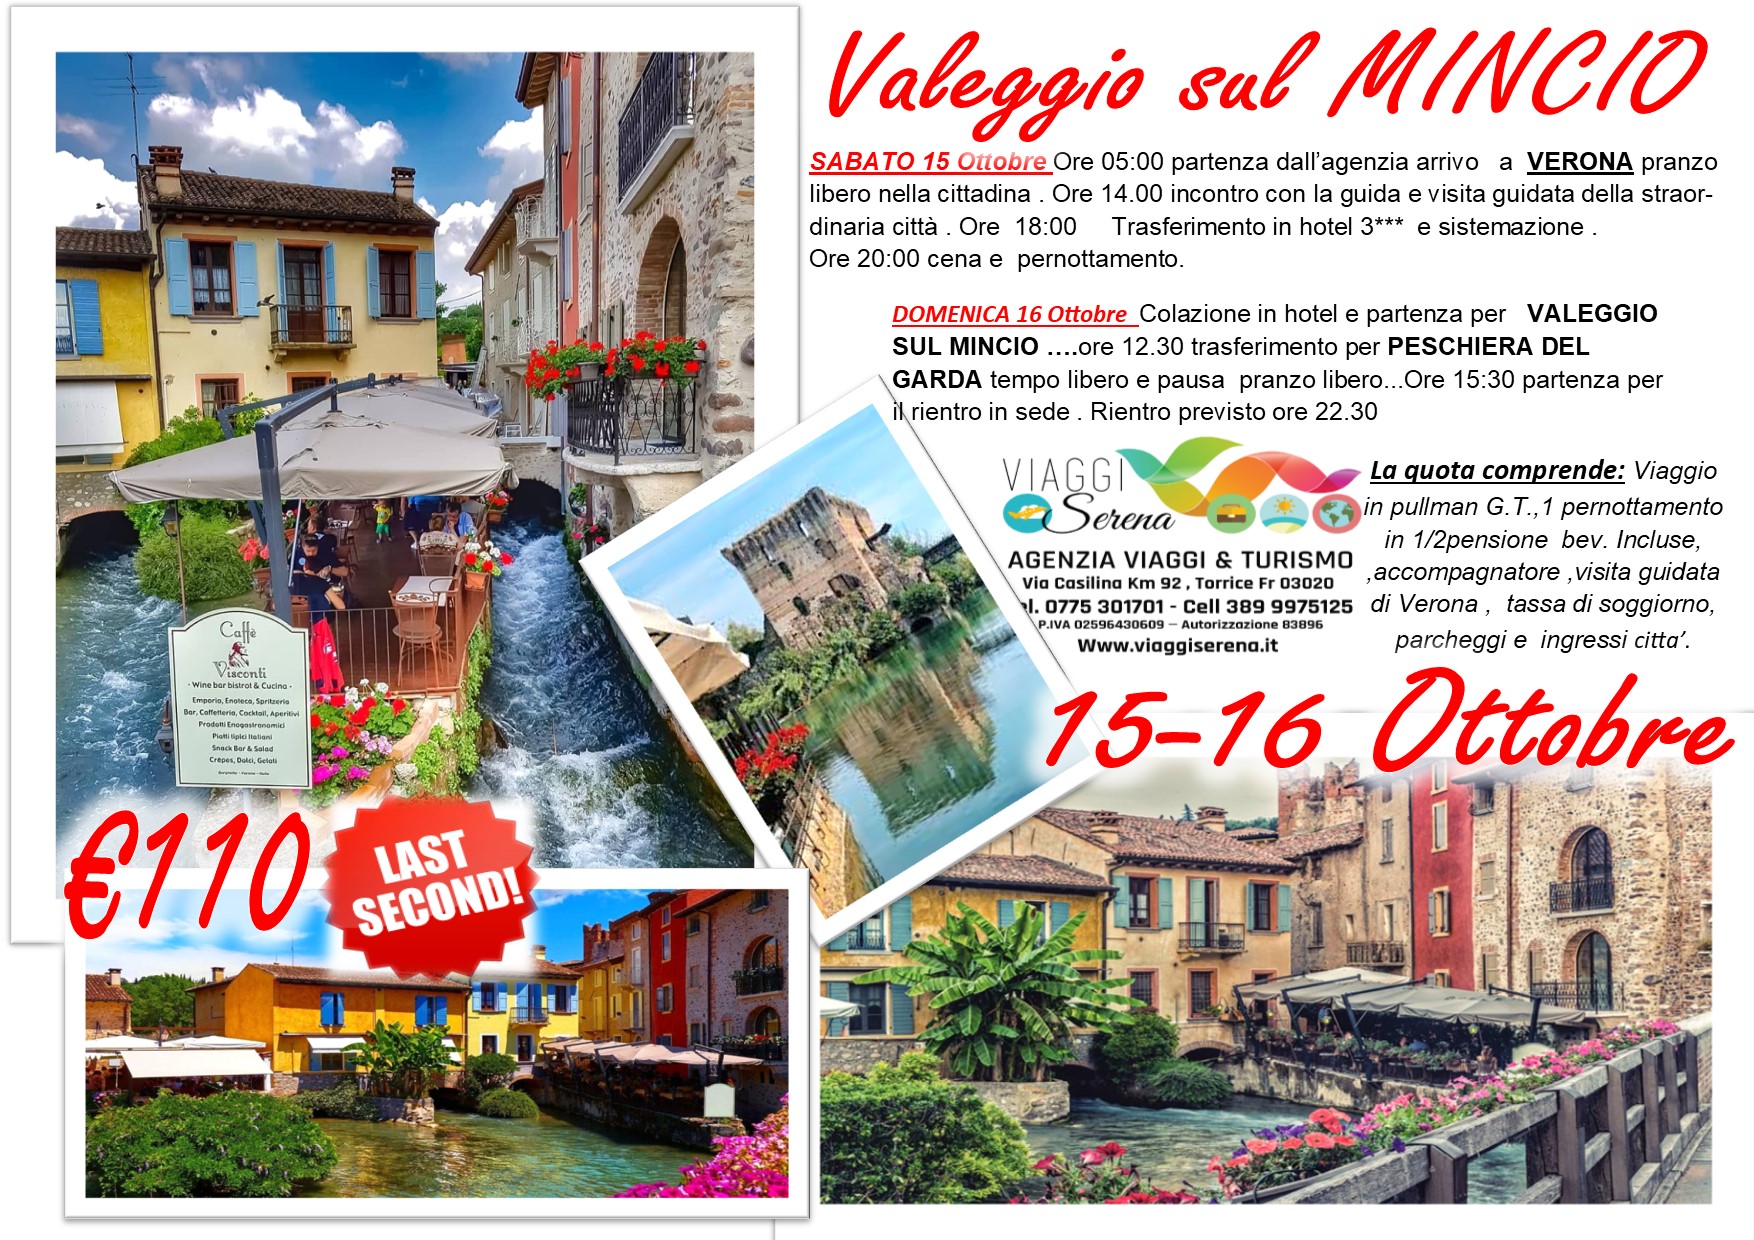 Viaggi di Gruppo: Valeggio sul Mincio “Borghetto”, Peschiera & Verona 15-16 Ottobre € 110,00